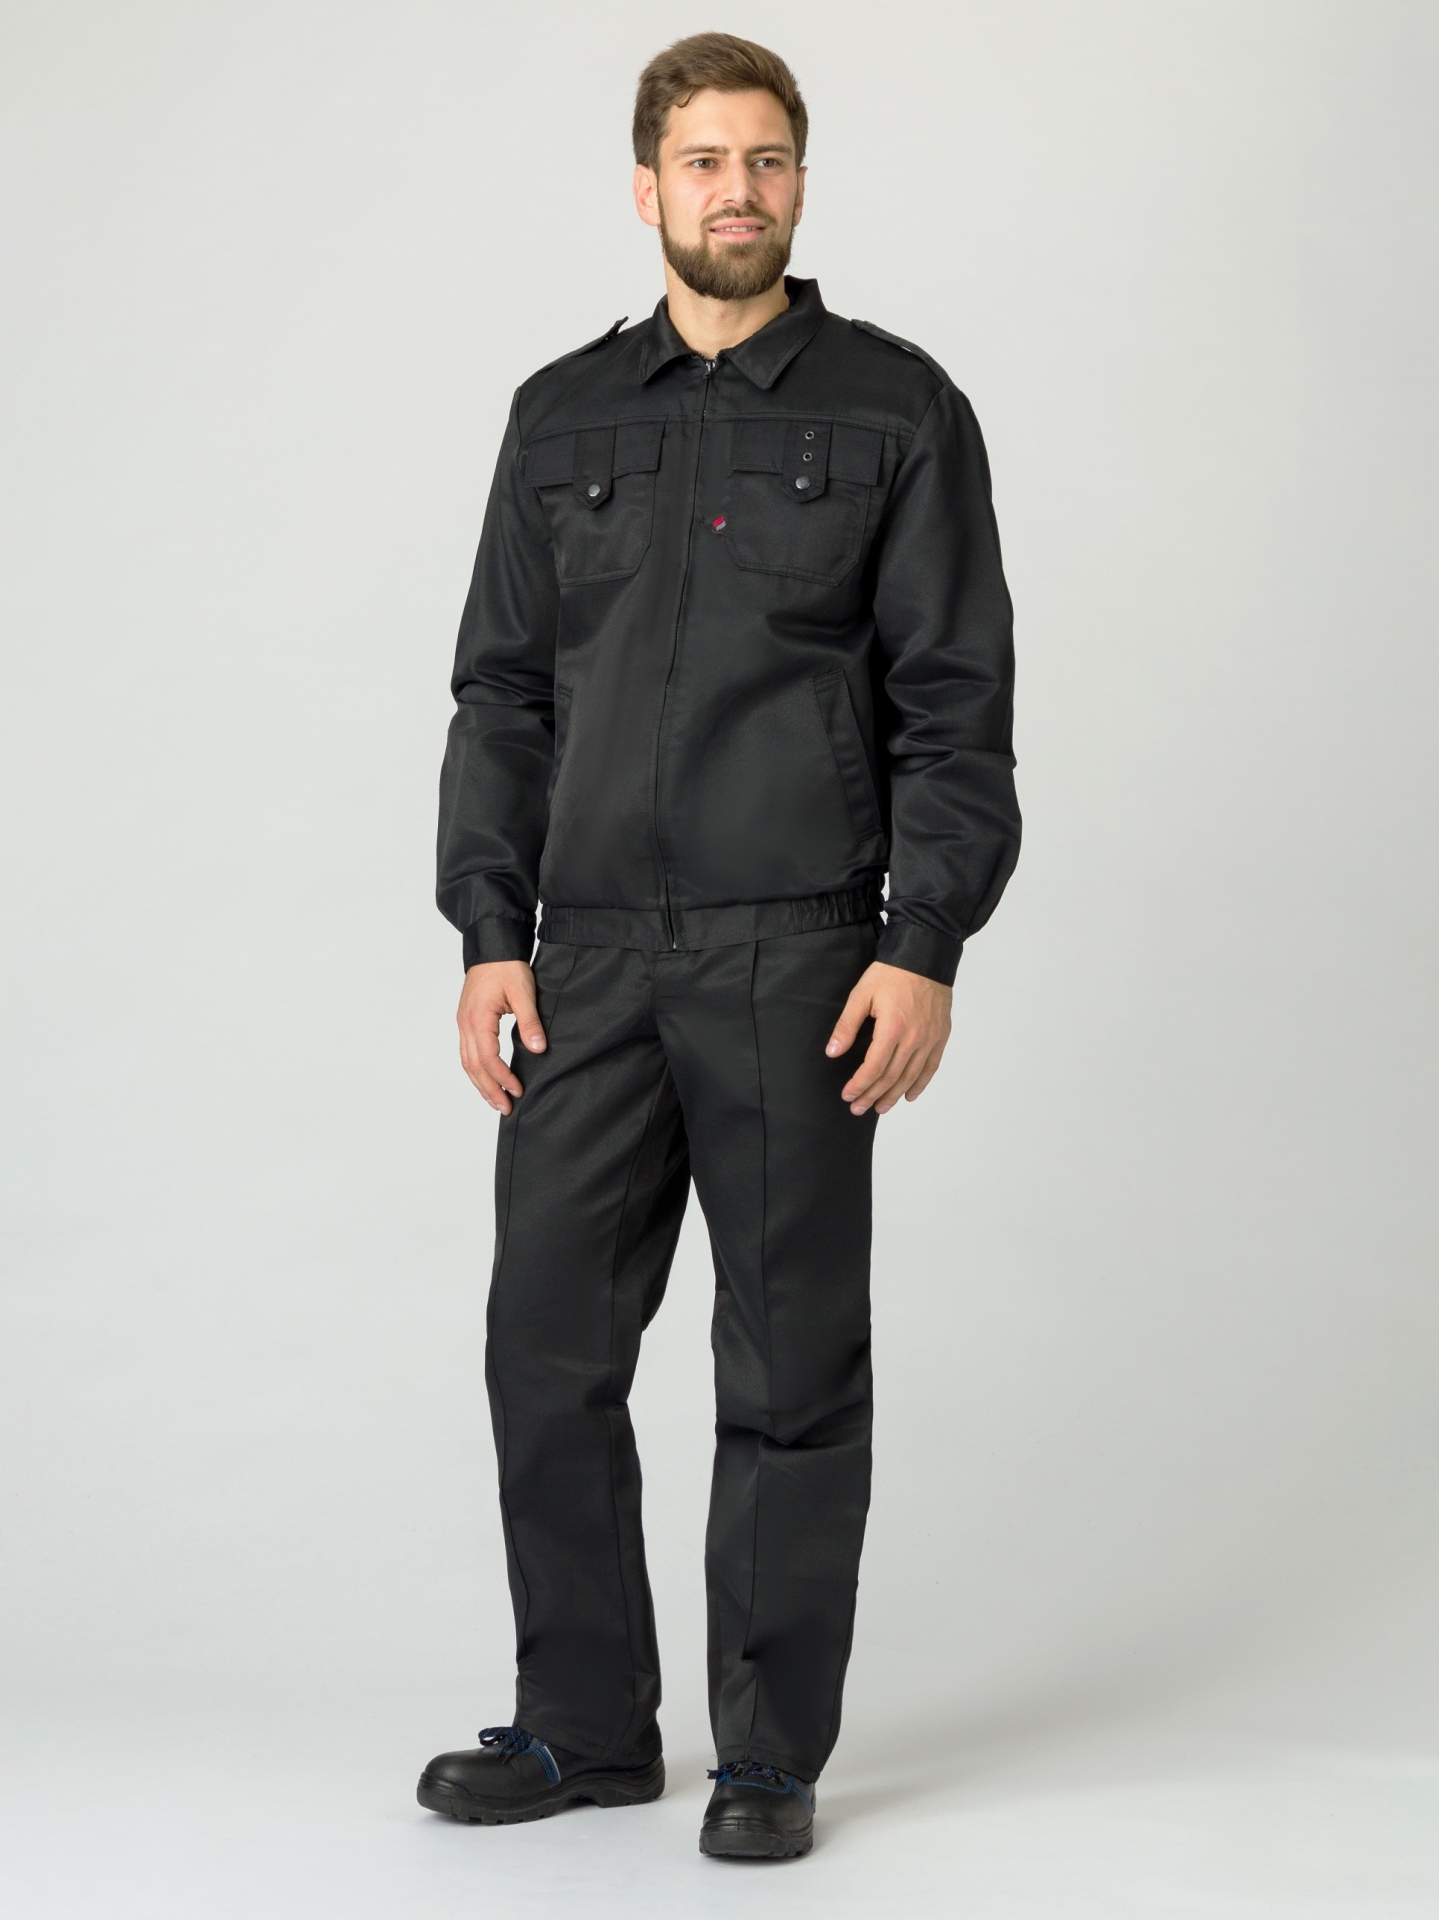 Летний костюм для охранника мужской (куртка и брюки), цвет: черный, ткань: смесовая